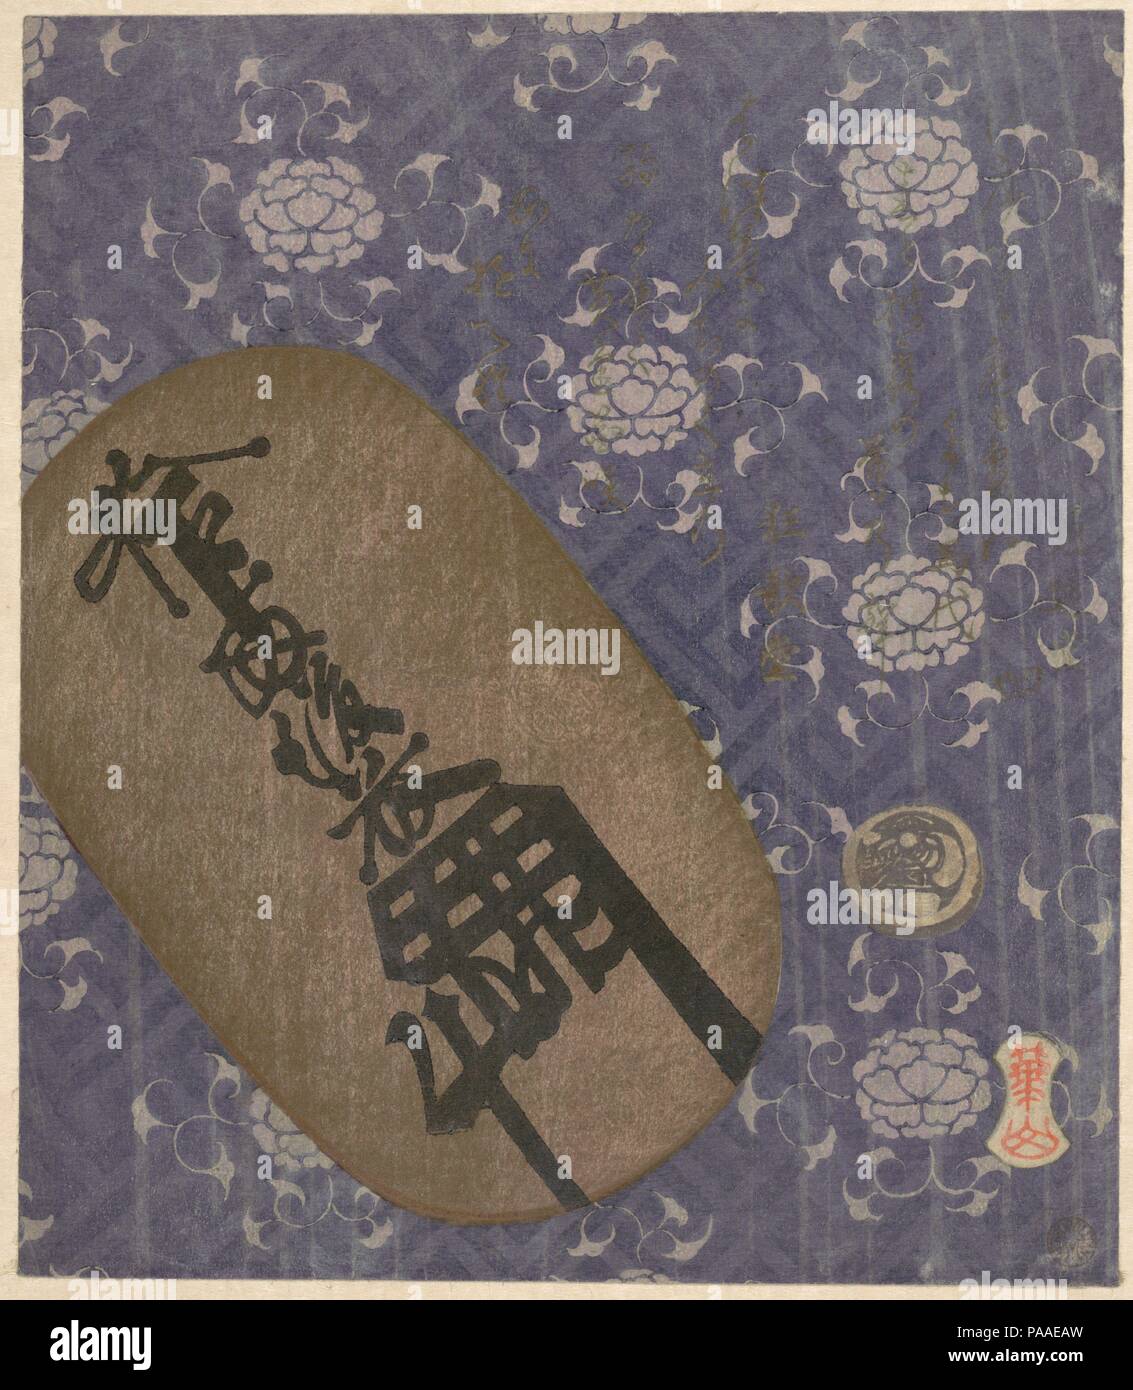 Pièce d'or d'Oban et mameita-gin 'argent' pièce bean contre-motif pivoine papier décoré. Artiste : Watanabe Kazan (1793-1841), Japonais. Culture : le Japon. Dimensions : 8 1/4 x 7 1/8 in. (21 x 18,1 cm). Date : 1822, année du cheval. Le premier poème, avec mention de son cheval (badai paiements), sans doute inspirée de l'imagerie dans cette impression. C'était une vieille tradition de faire un don offre d'un cheval à un sanctuaire Shinto, mais pendant des siècles, c'était aussi la coutume de faire un paiement monétaire--égale à la valeur d'un beau cheval. L'ohiroma mentionné dans le verset indique que le paramètre est l/24 Banque D'Images